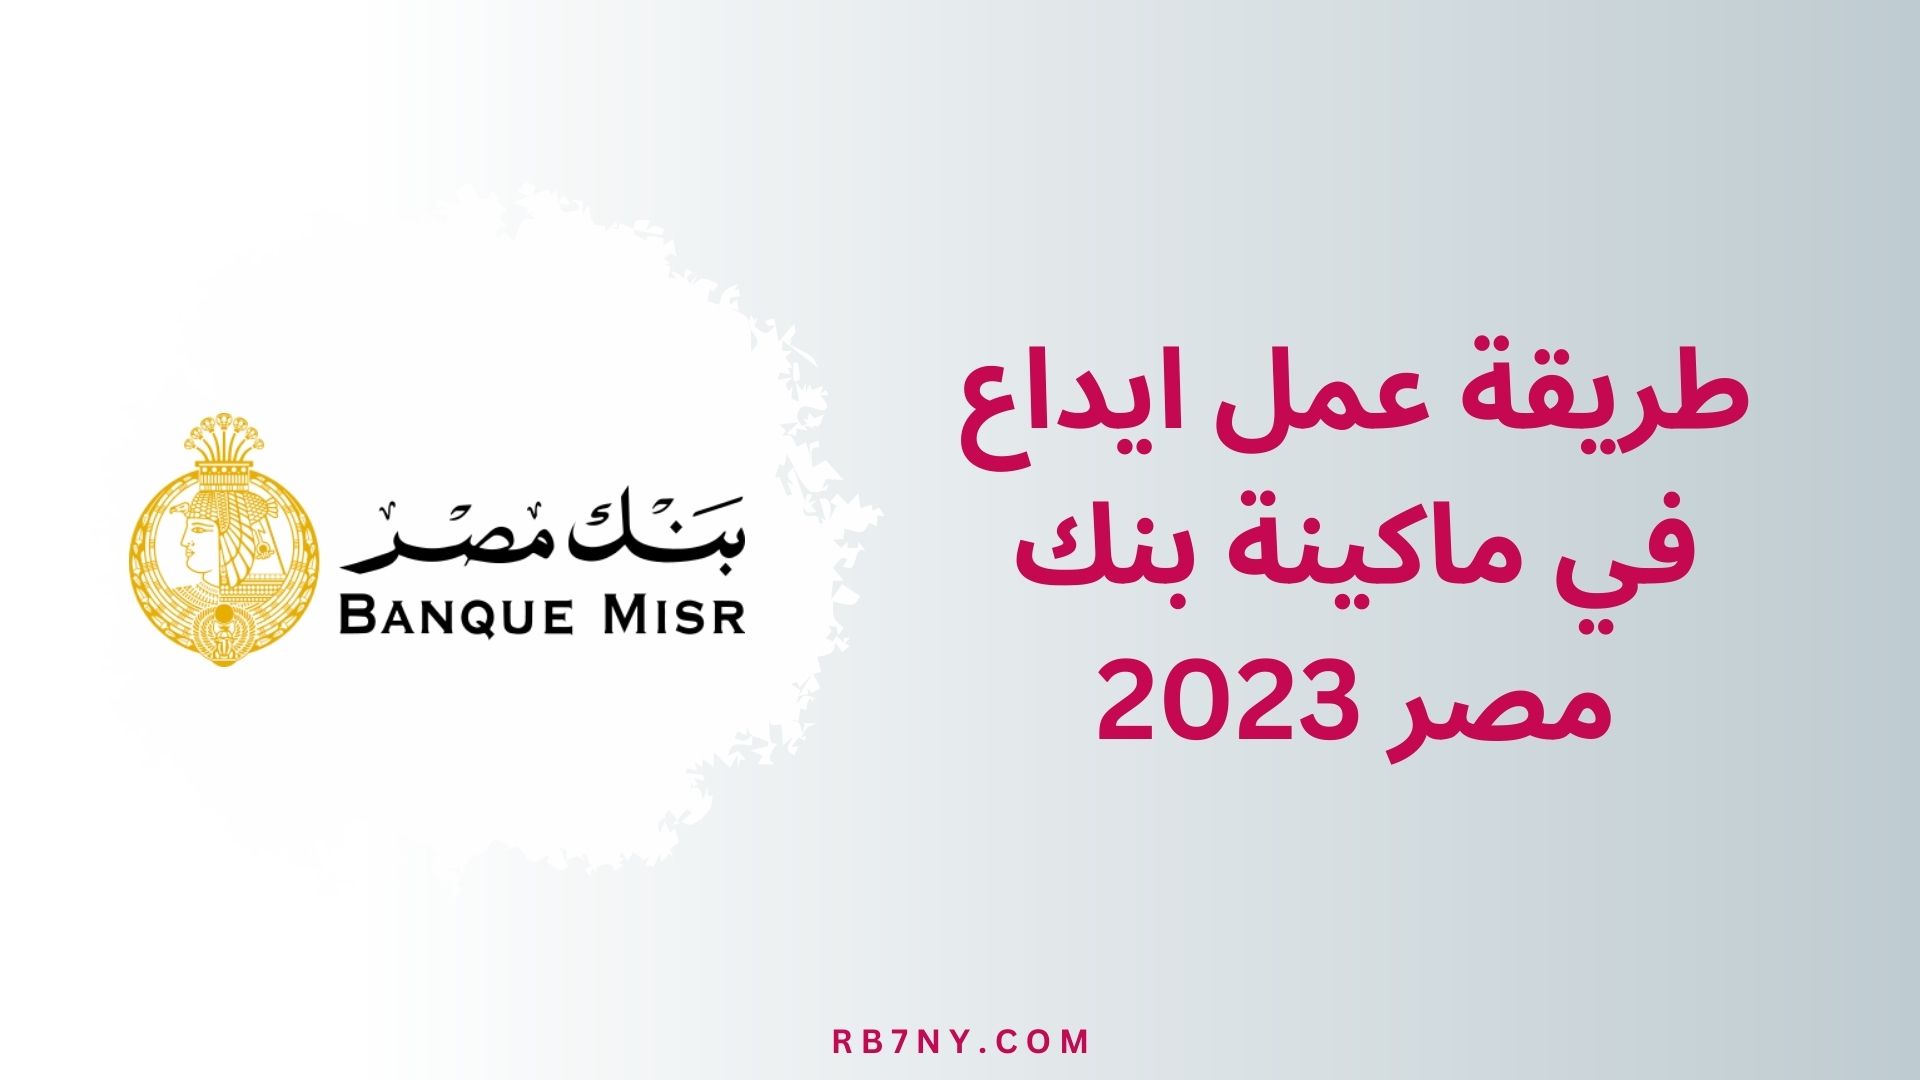 طريقة عمل ايداع في ماكينة بنك مصر 2023